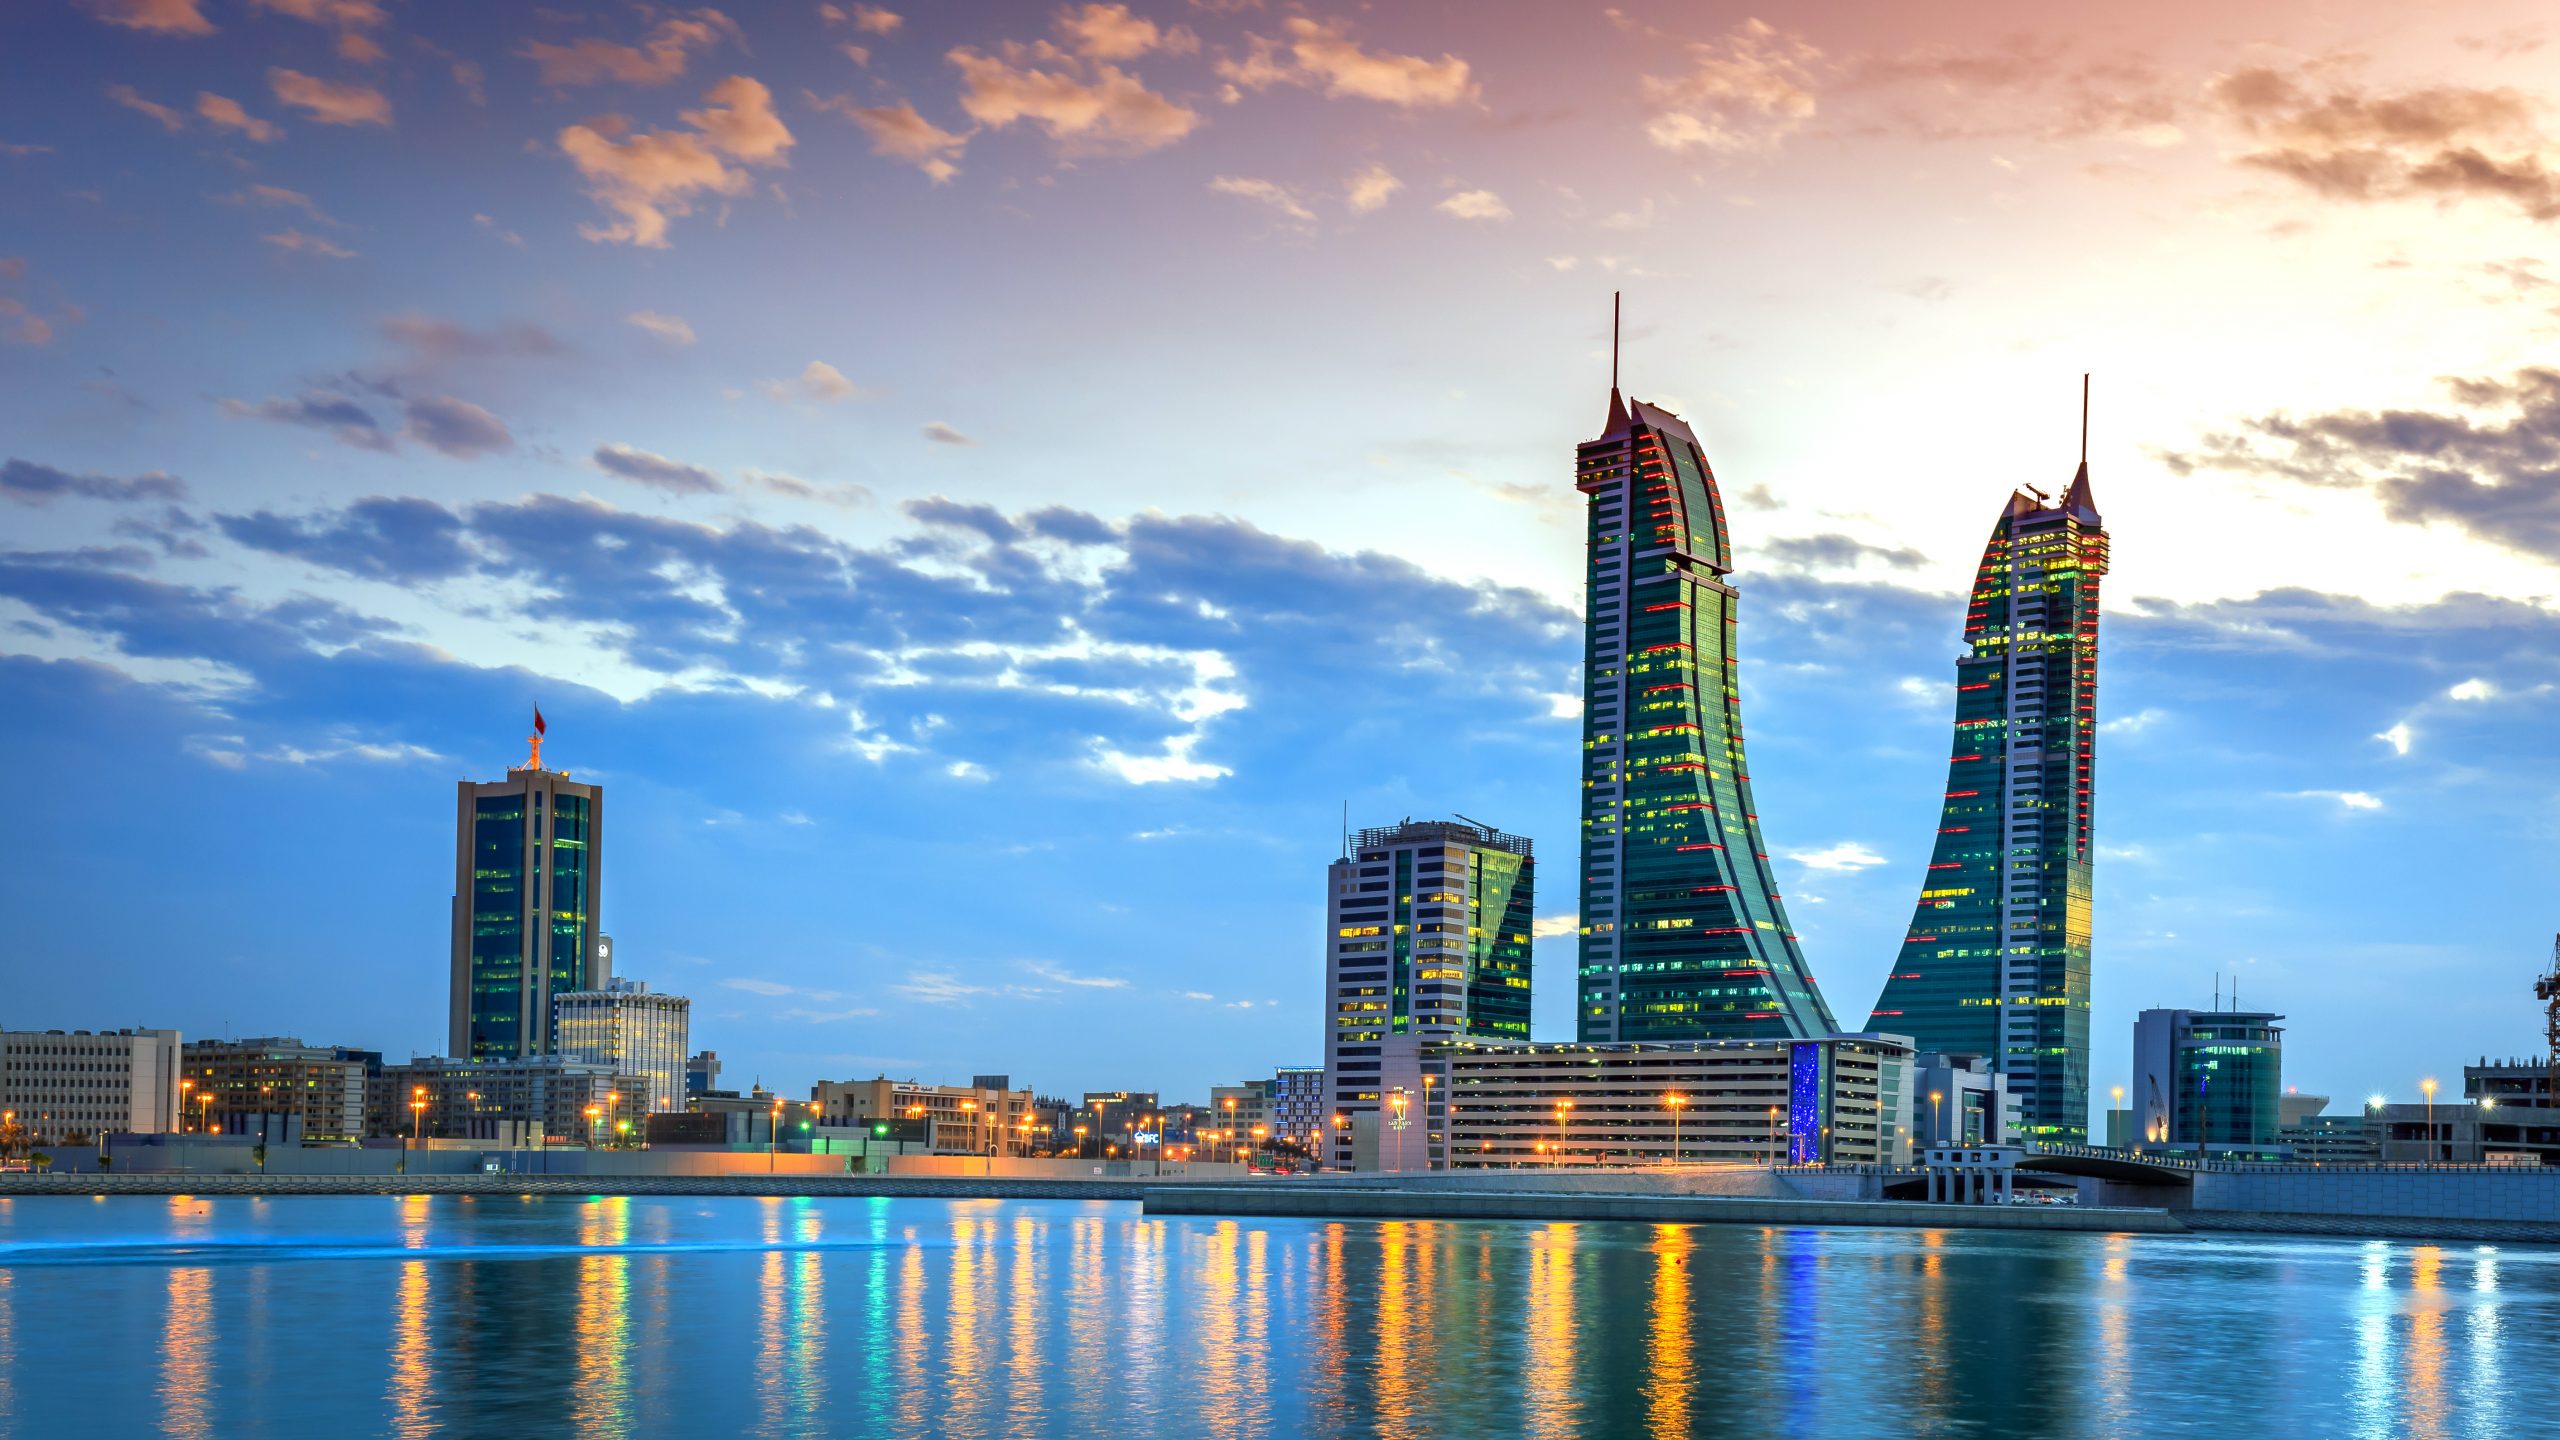 Saudi FDI stock in Bahrain amounts to USD9.8 billion